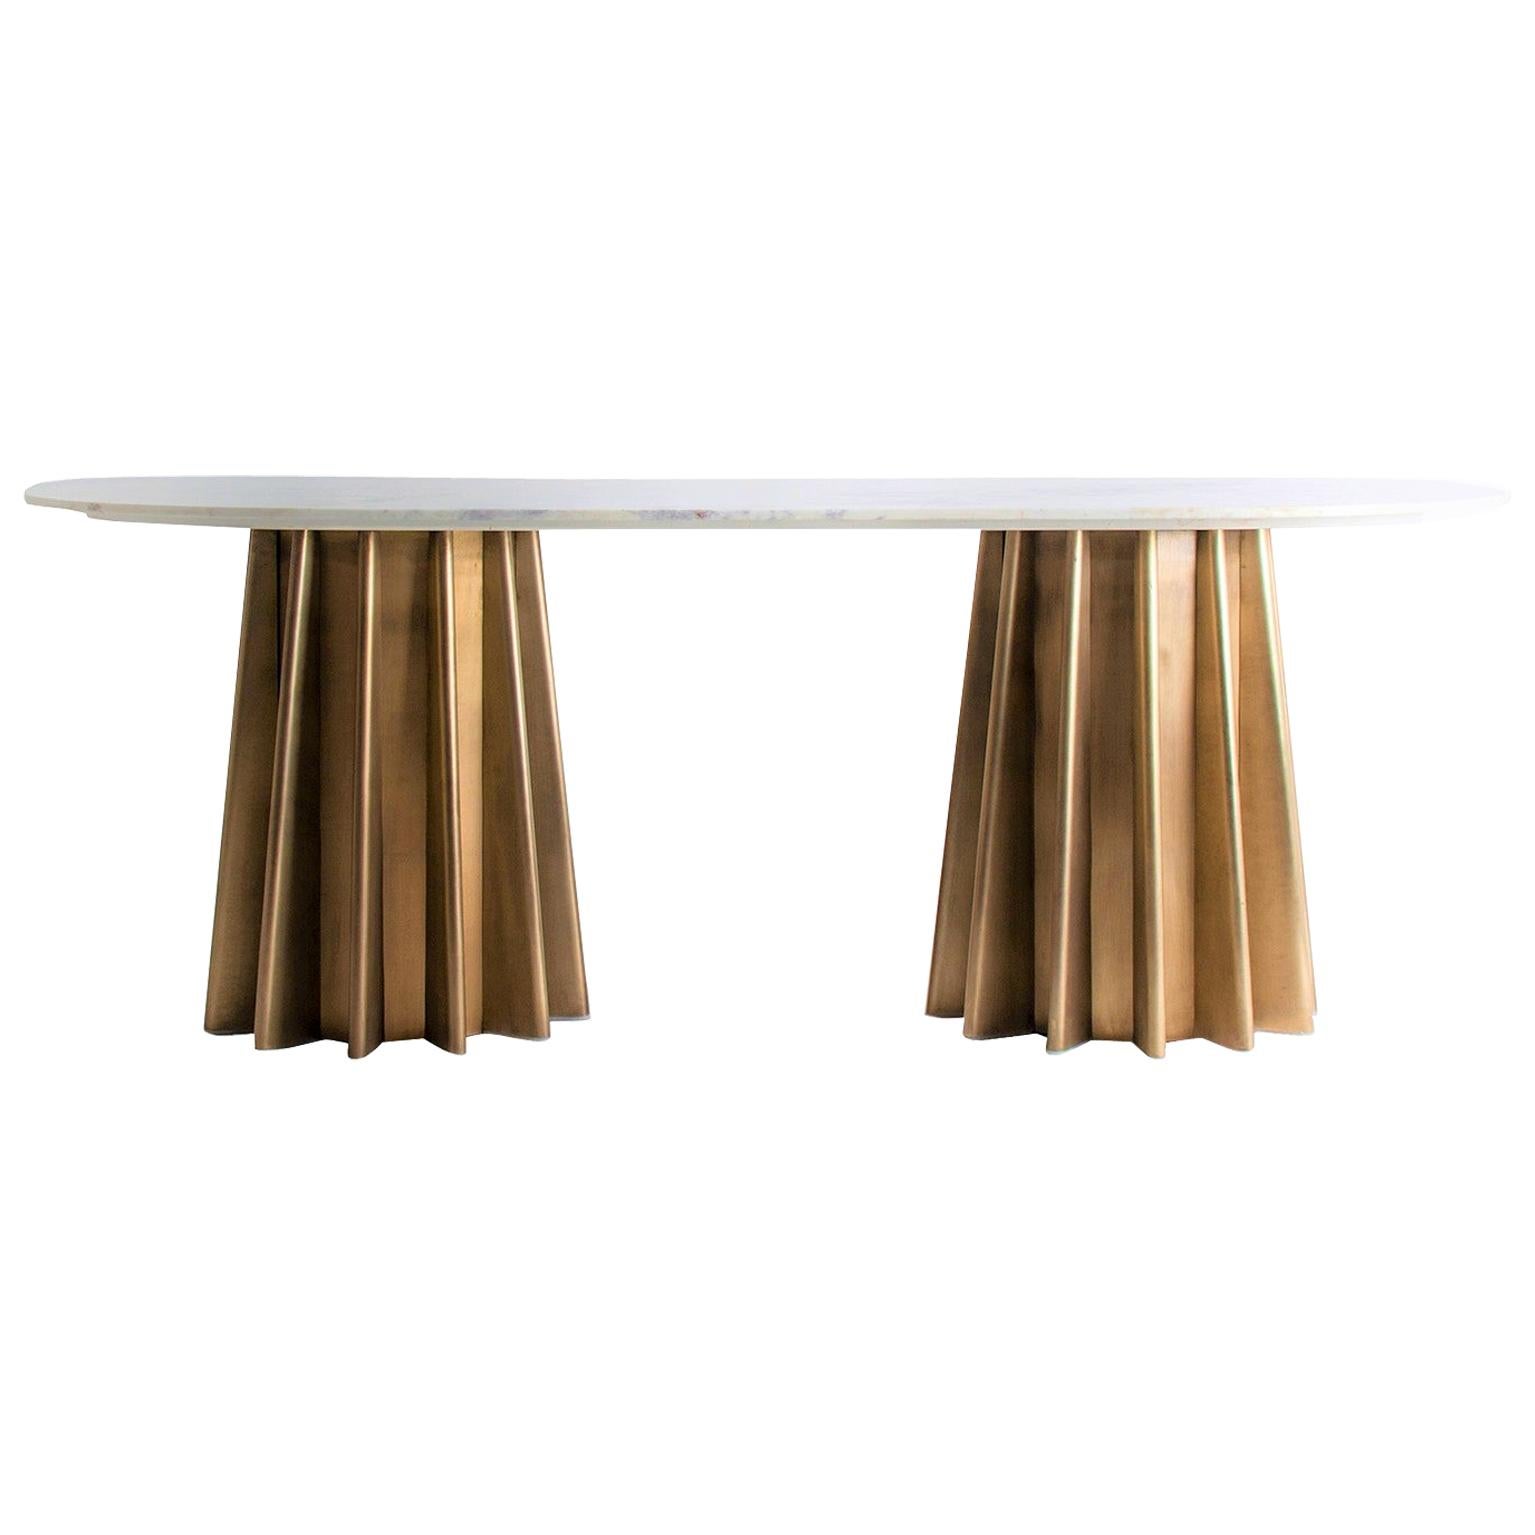 Ovaler Tisch mit Marmor- und Metallsockel im italienischen Designstil